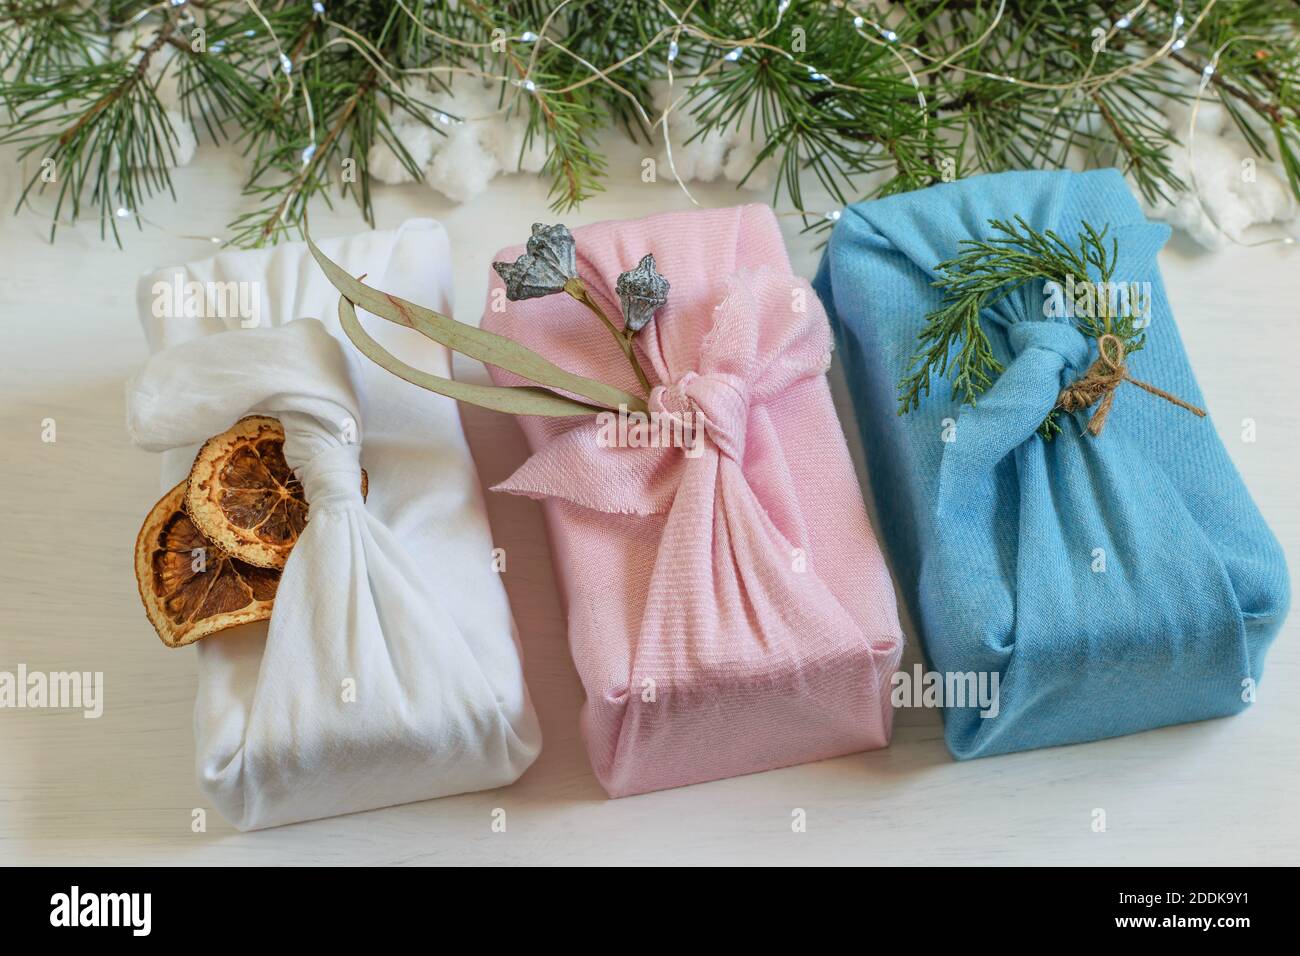 Sin residuos, cajas de regalo de Navidad hechas a mano en tela de  reutilización envueltas en el estilo tradicional japonés furoshiki.Diy  regalos libres de plástico hechos para la Navidad o Fotografía de